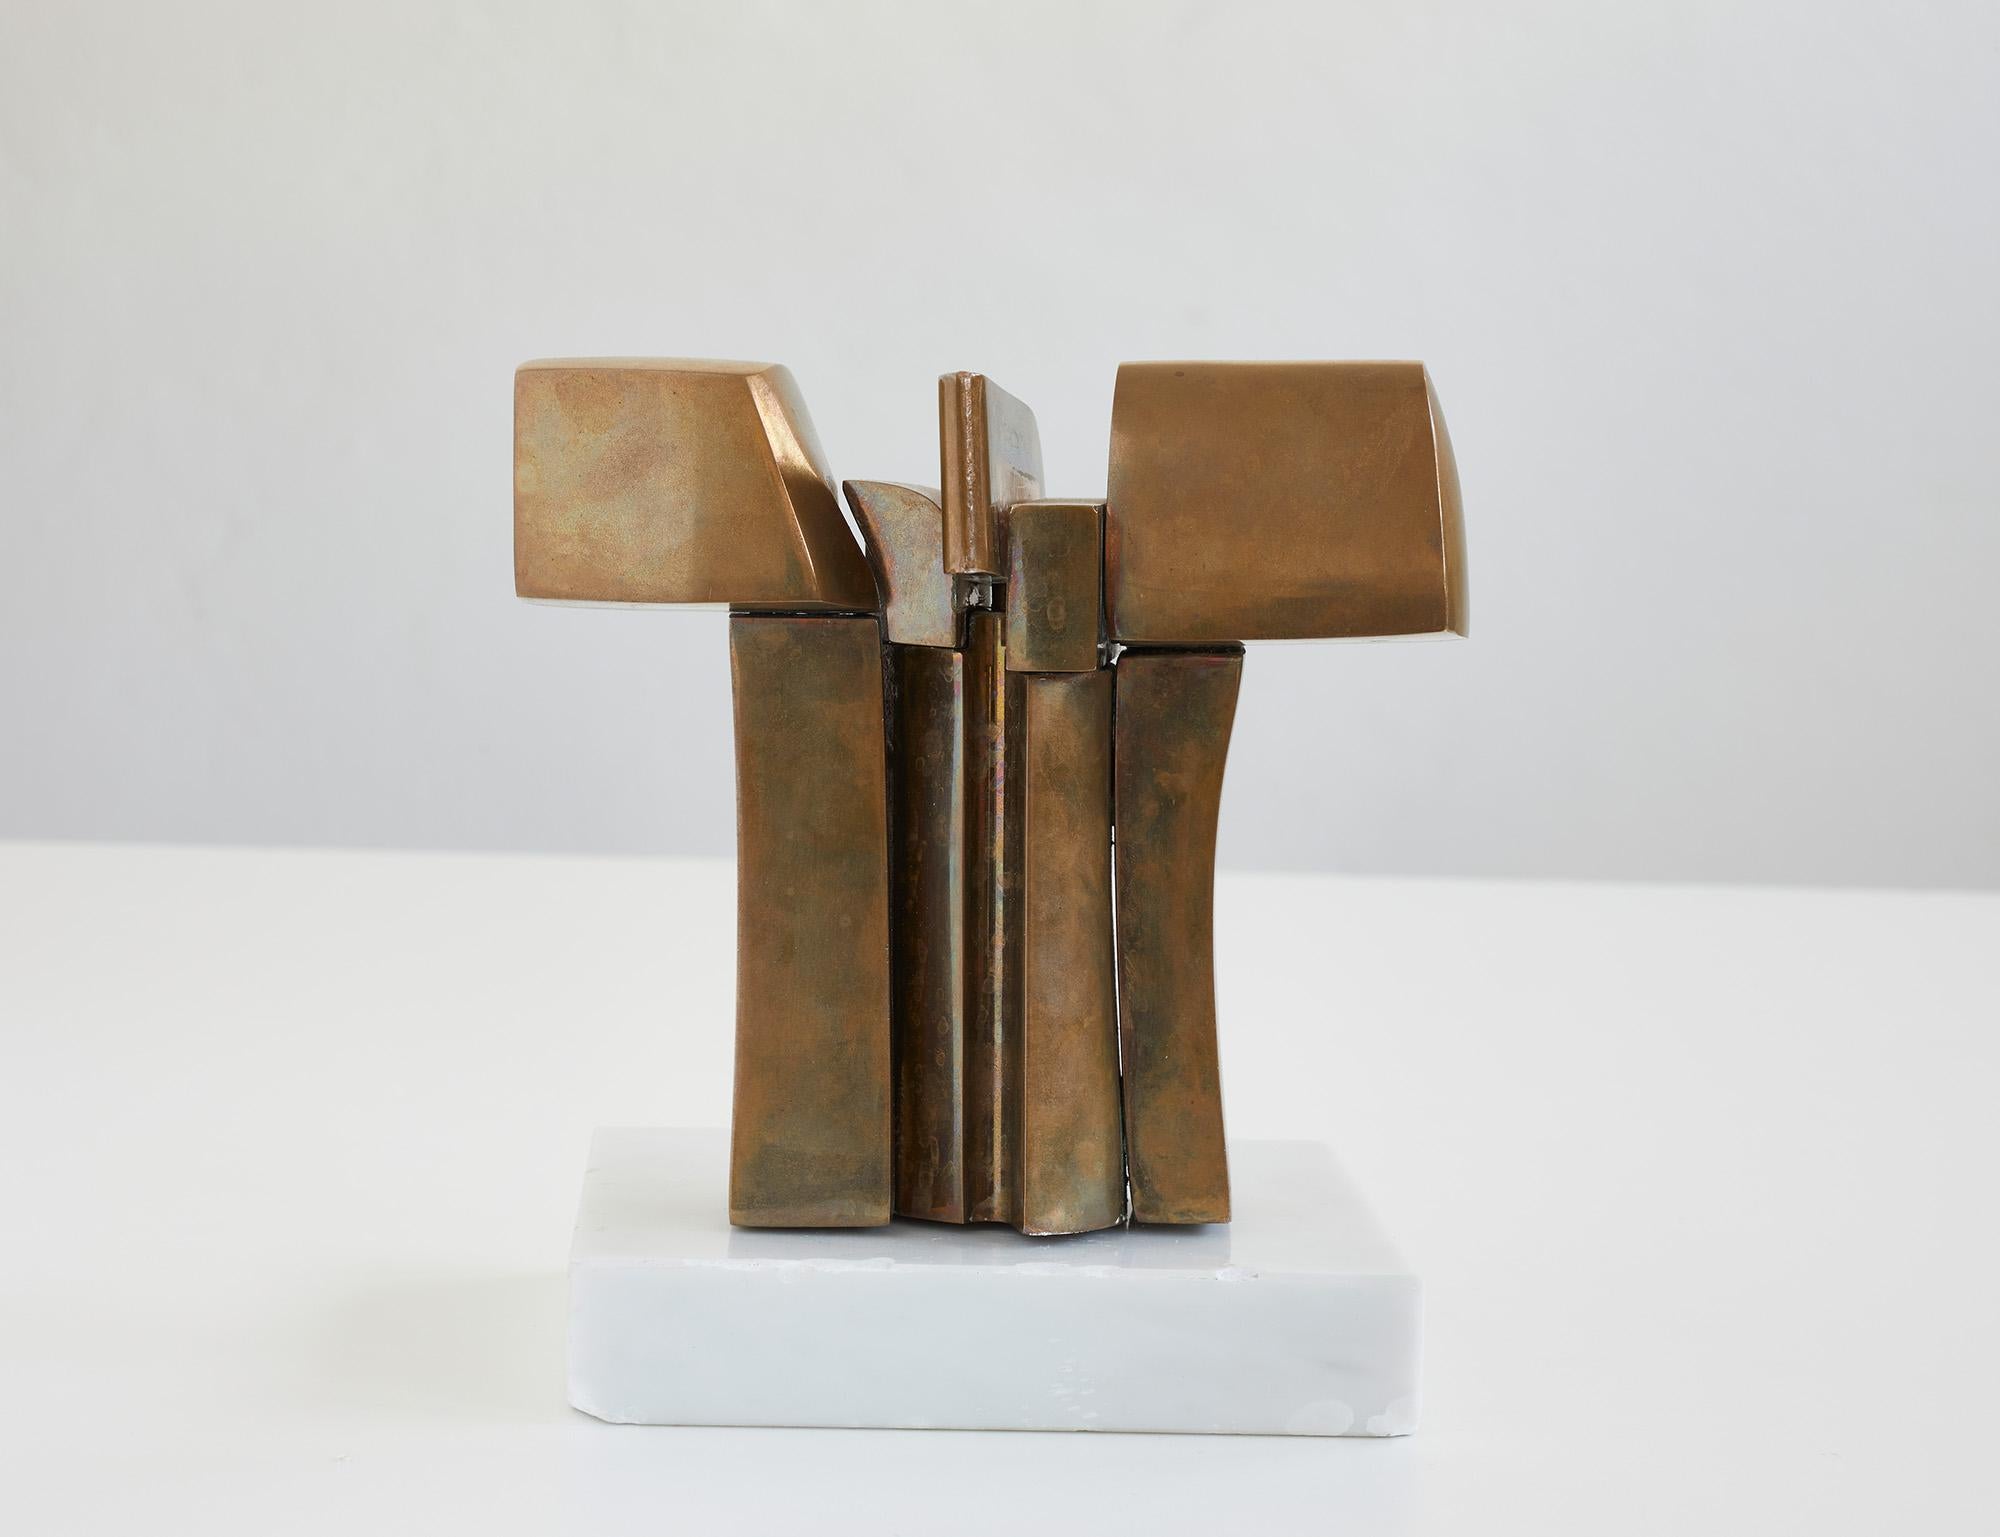 Spanish Polished bronze sculpture by José Luis Sanchez (1926-2018)